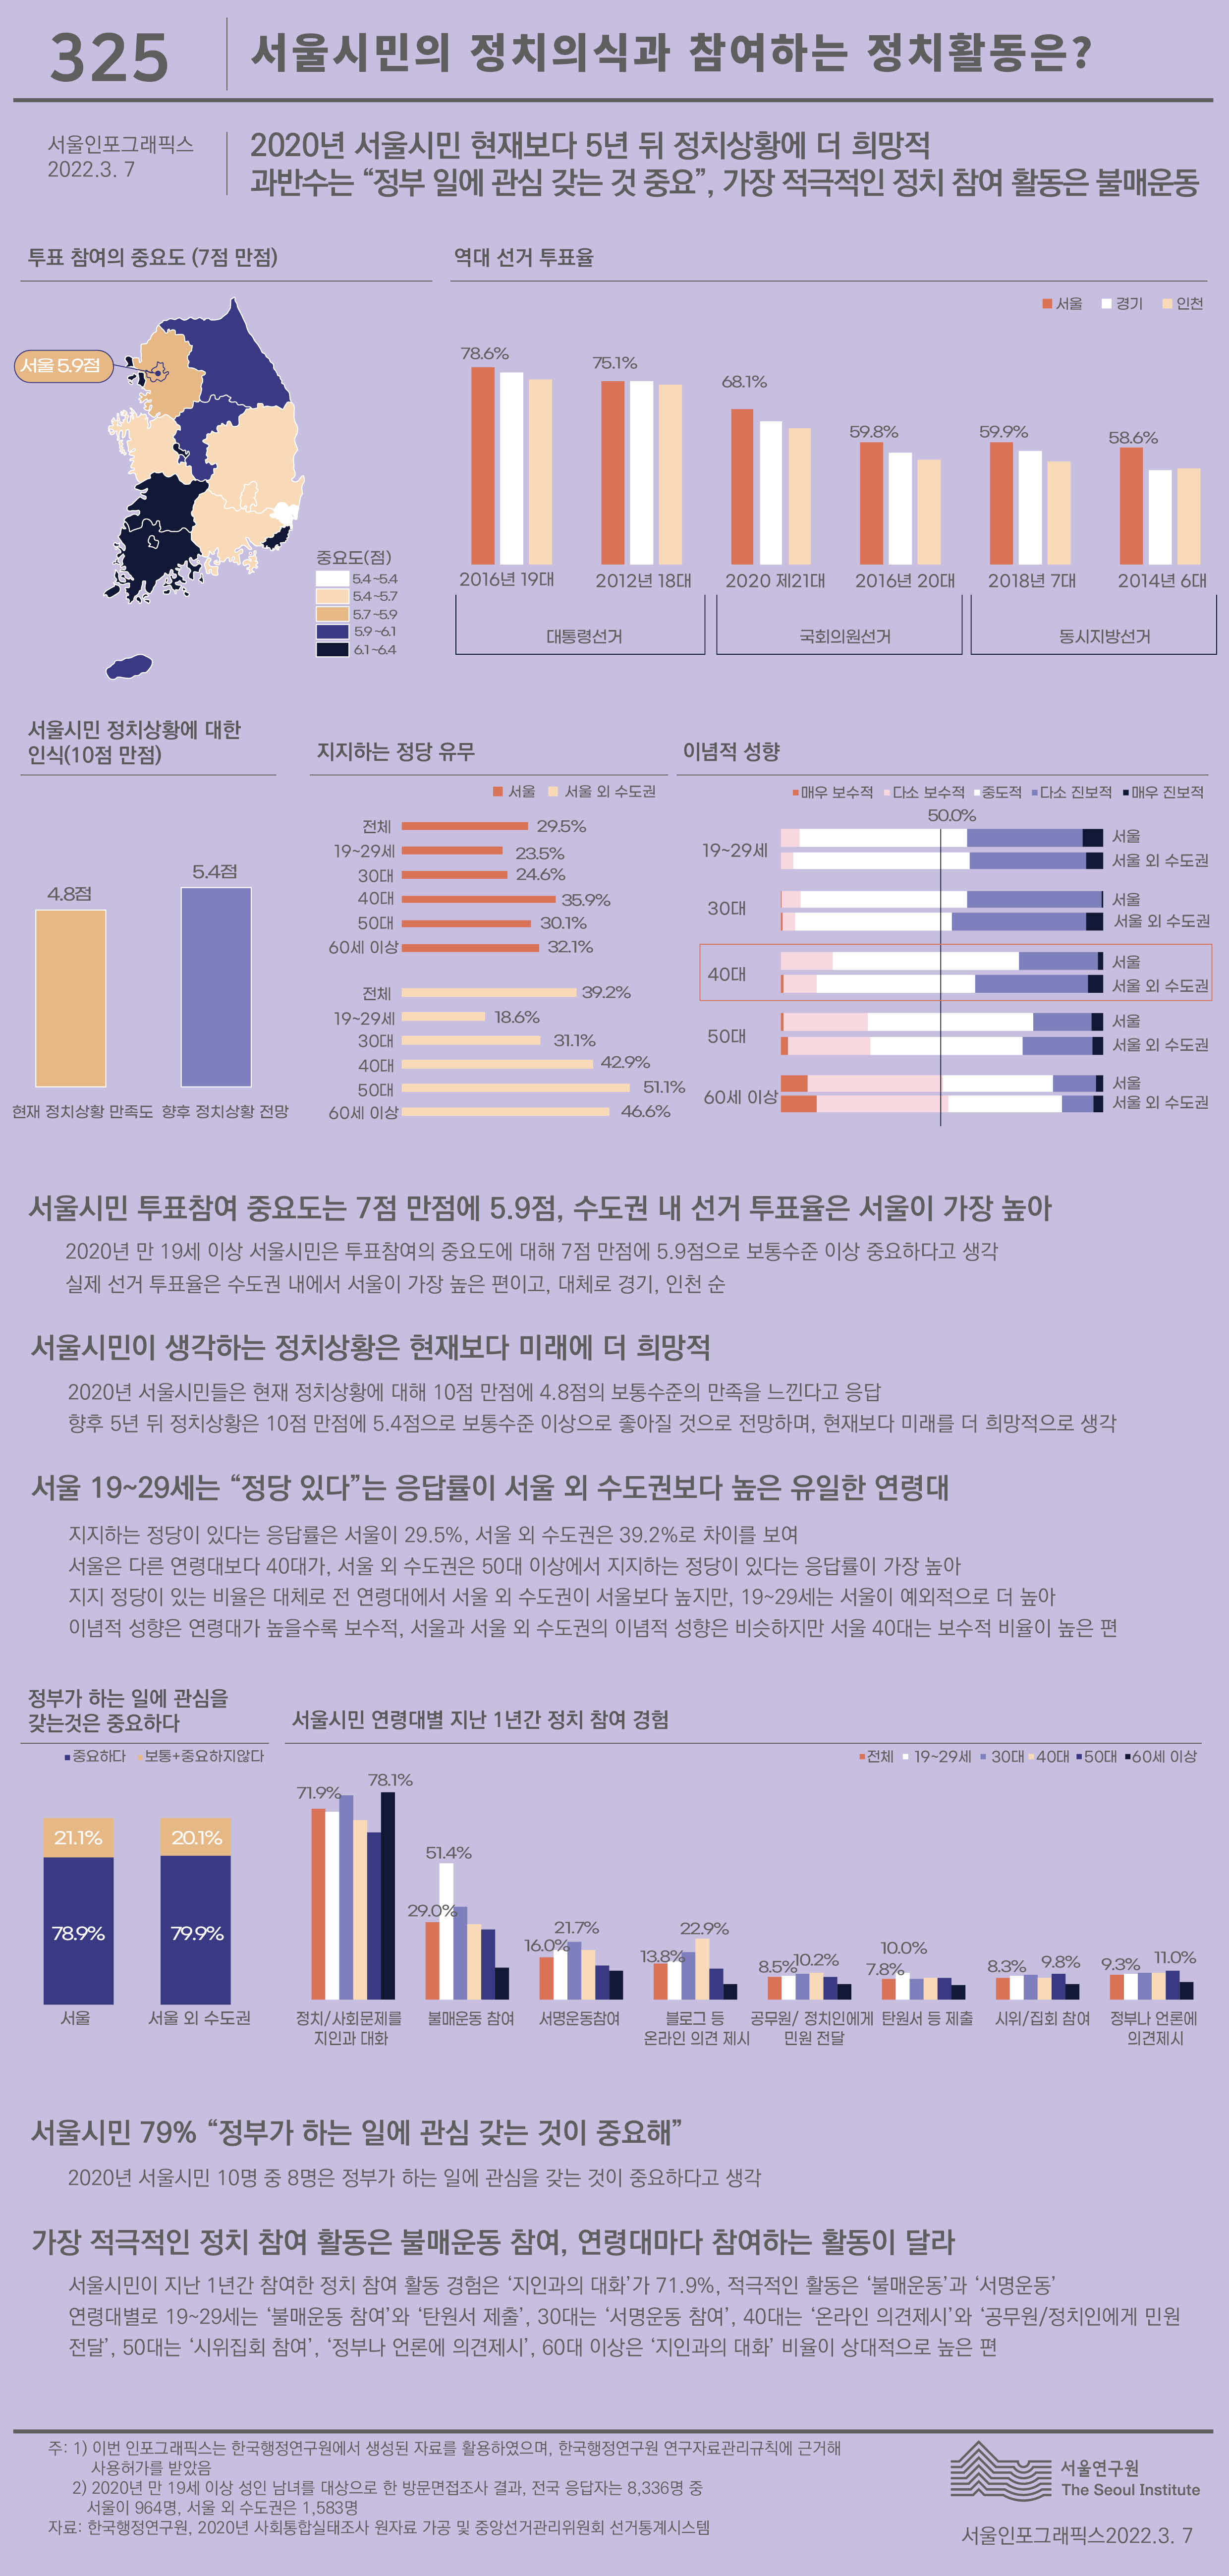 2020년 만 19세 이상 서울시민 투표참여 중요도는 7점 만점에 5.9점. 현재 정치상황(4.8점)보다 향후 정치상황(5.4점)에 더 희망적. 서울시민 29.5%는 지지하는 정당이 있고, 연령대가 높을수록 보수적. 서울시민의 가장 적극적인 정치 참여 활동은 불매운동으로 정리될 수 있습니다. 인포그래픽으로 제공되는 그래픽은 하단에 표로 자세히 제공됩니다.